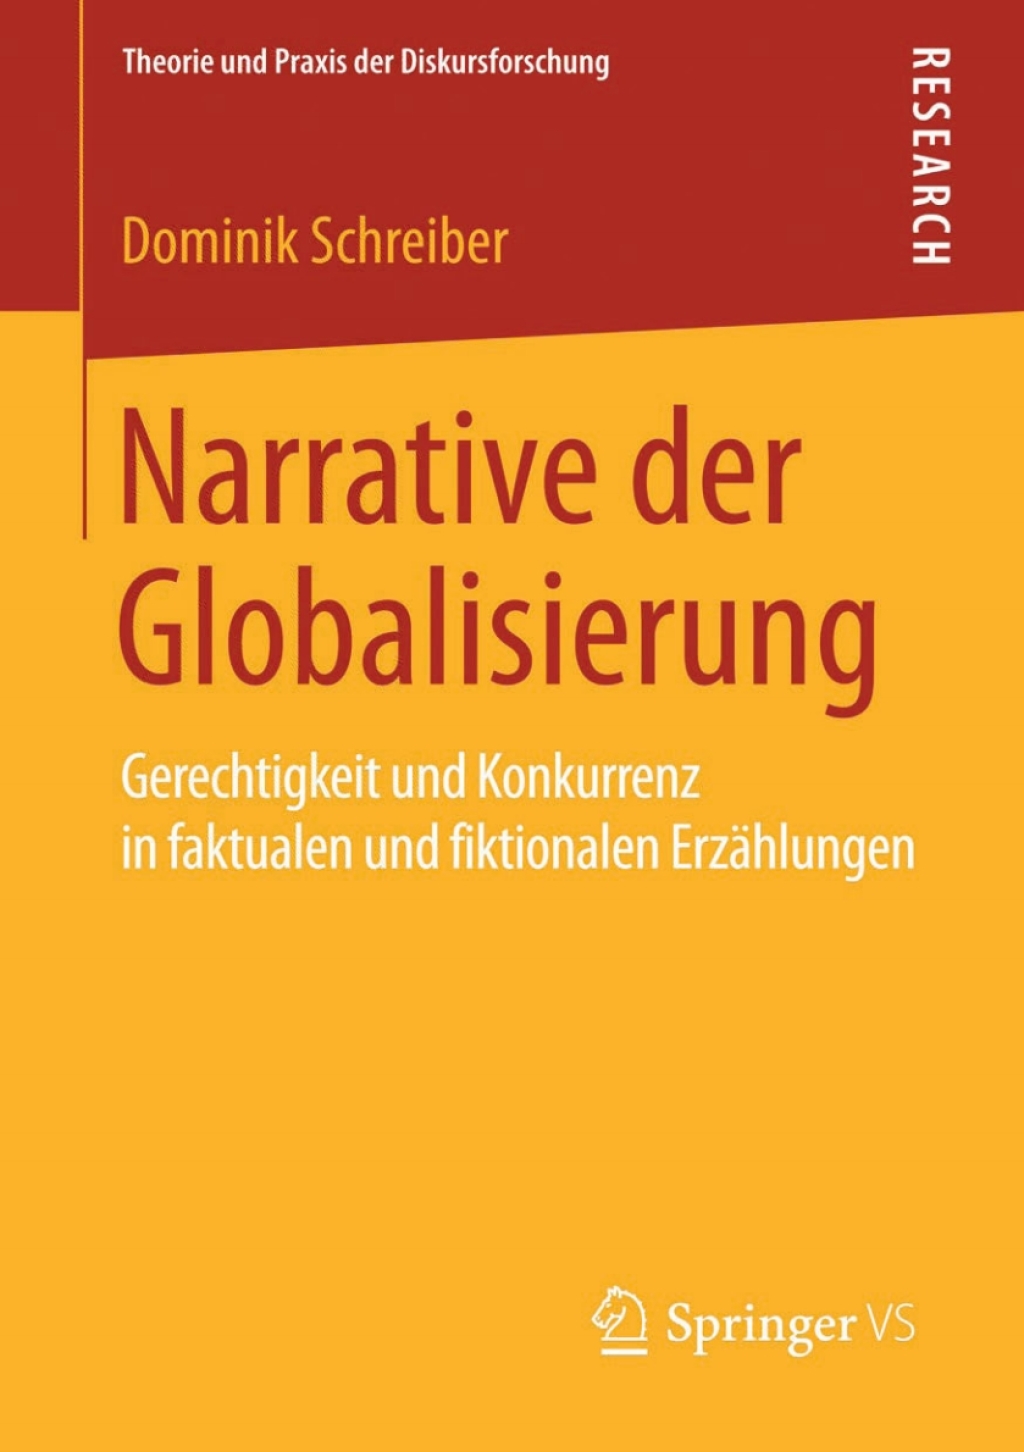 Narrative der Globalisierung (eBook) - Dominik Schreiber,